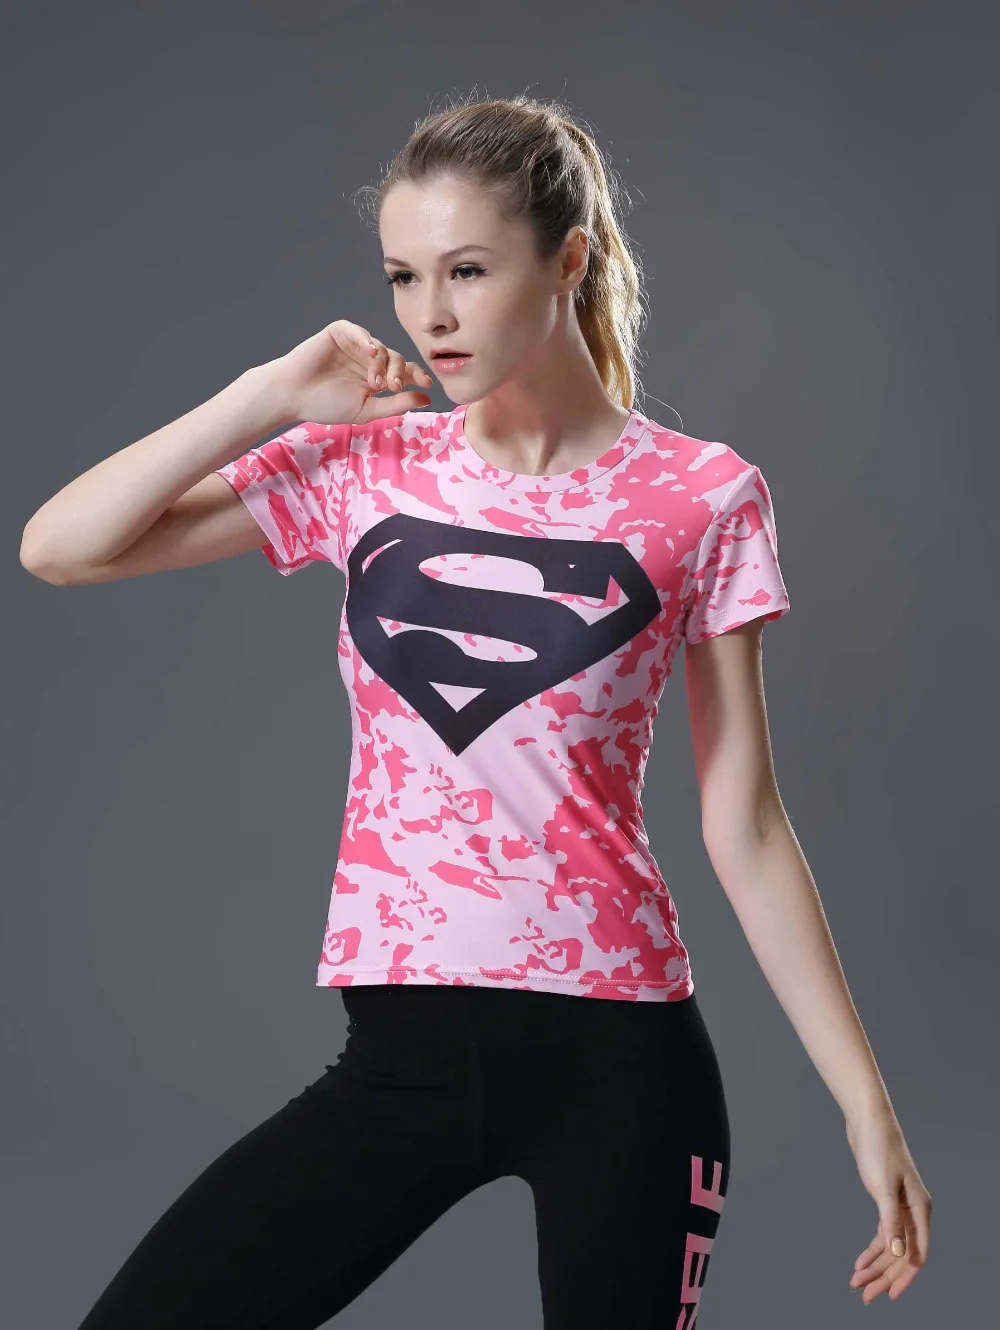 Marvel женские боди футболка флэш компрессионная Футболка женские фитнес колготки под футболку Femme топы оптом